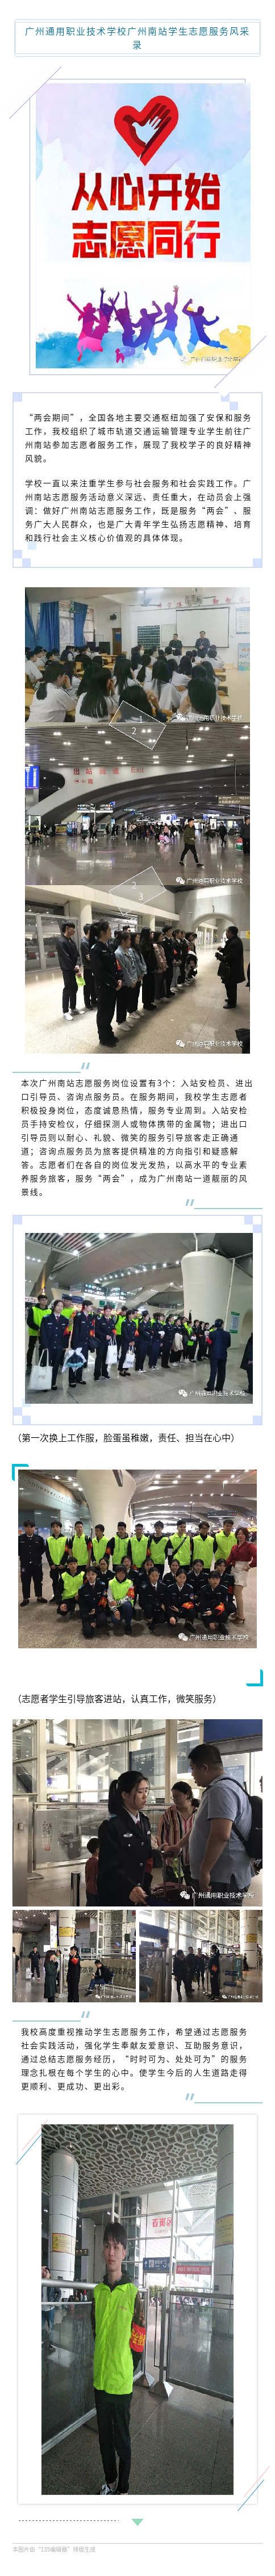 广州南站学生志愿服务风采录